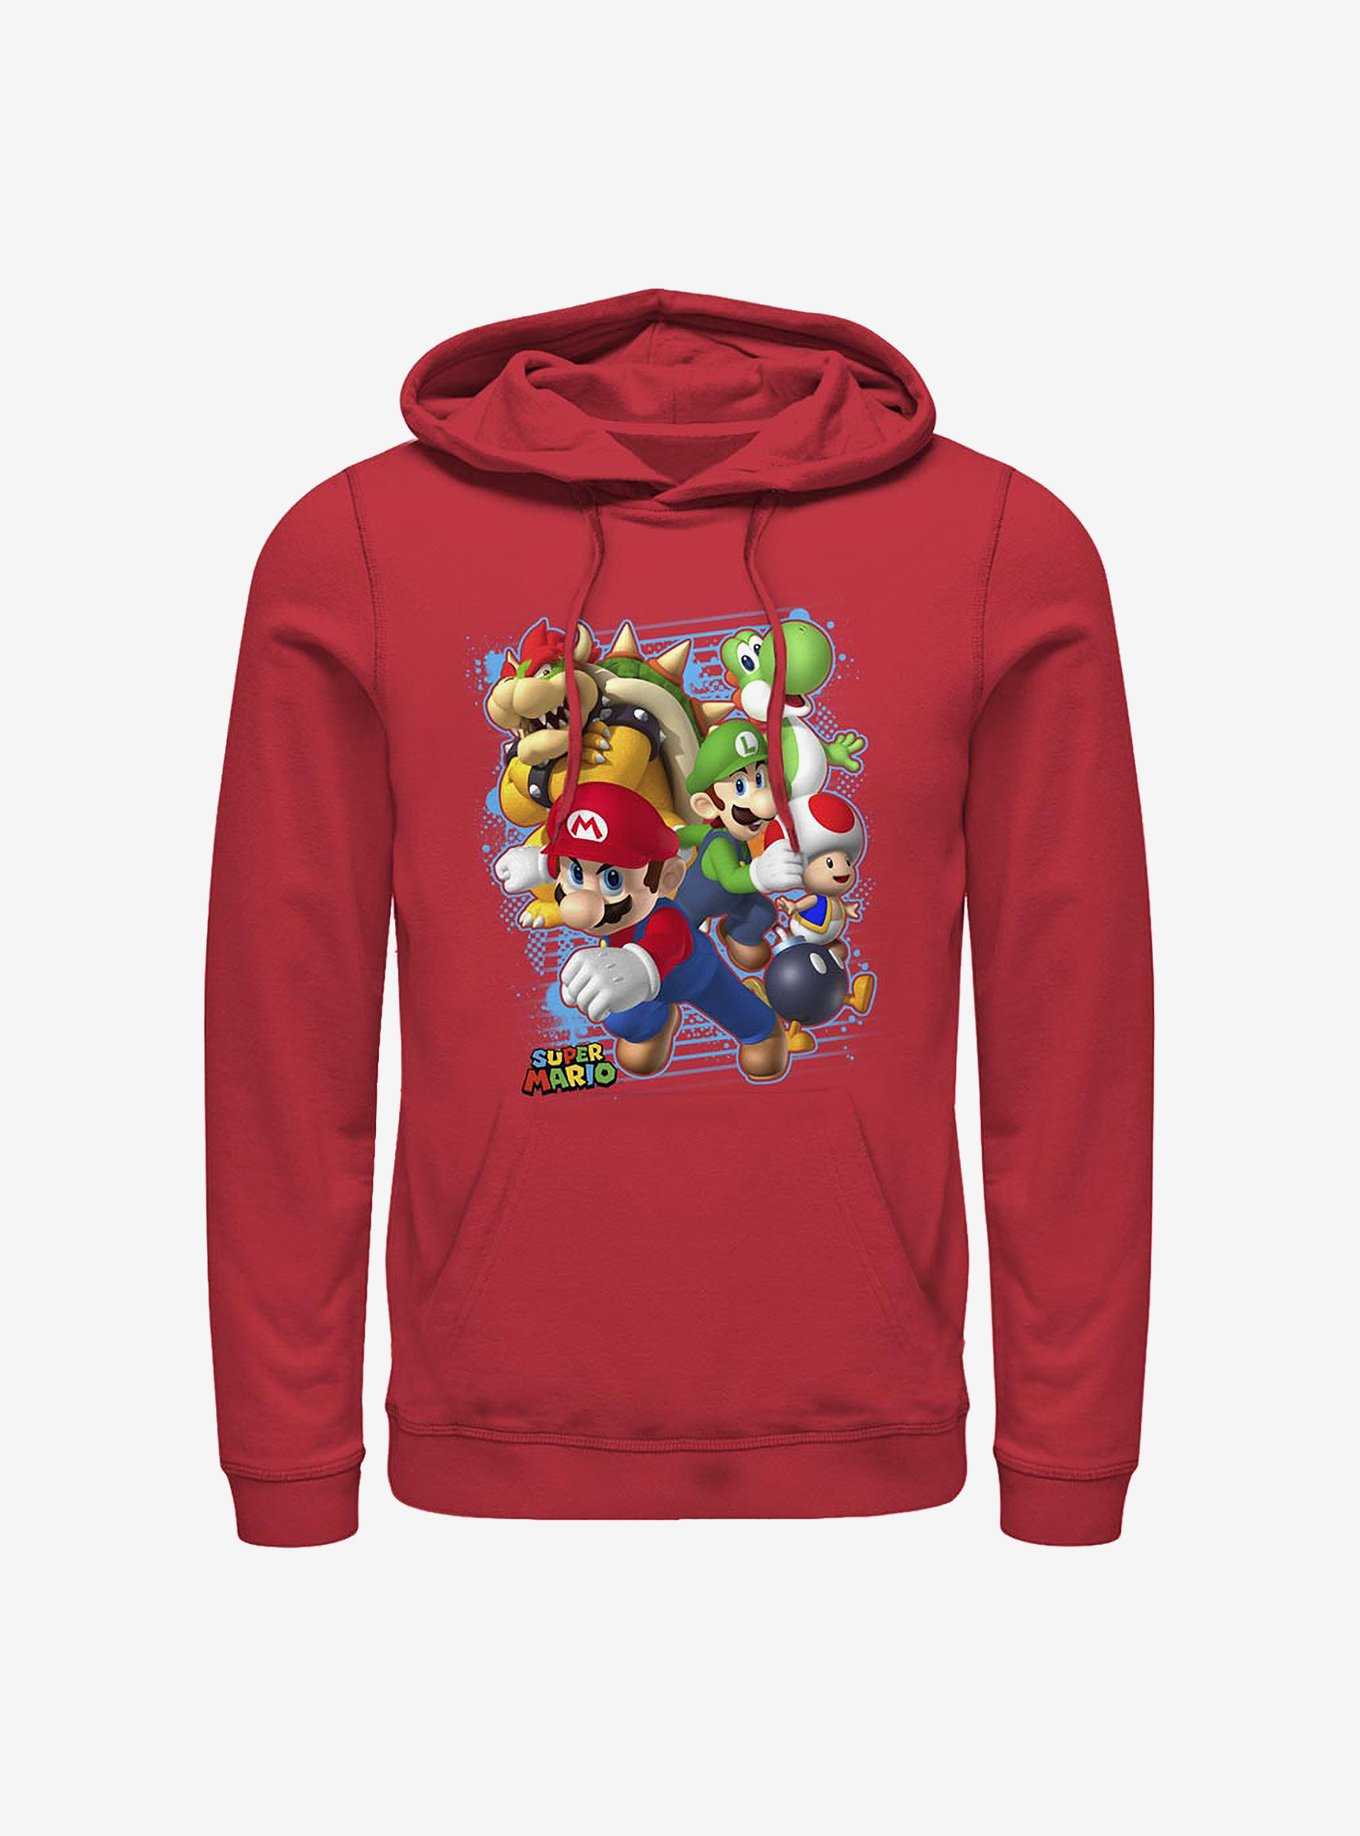 Nintendo Mario Blast Out Hoodie, , hi-res